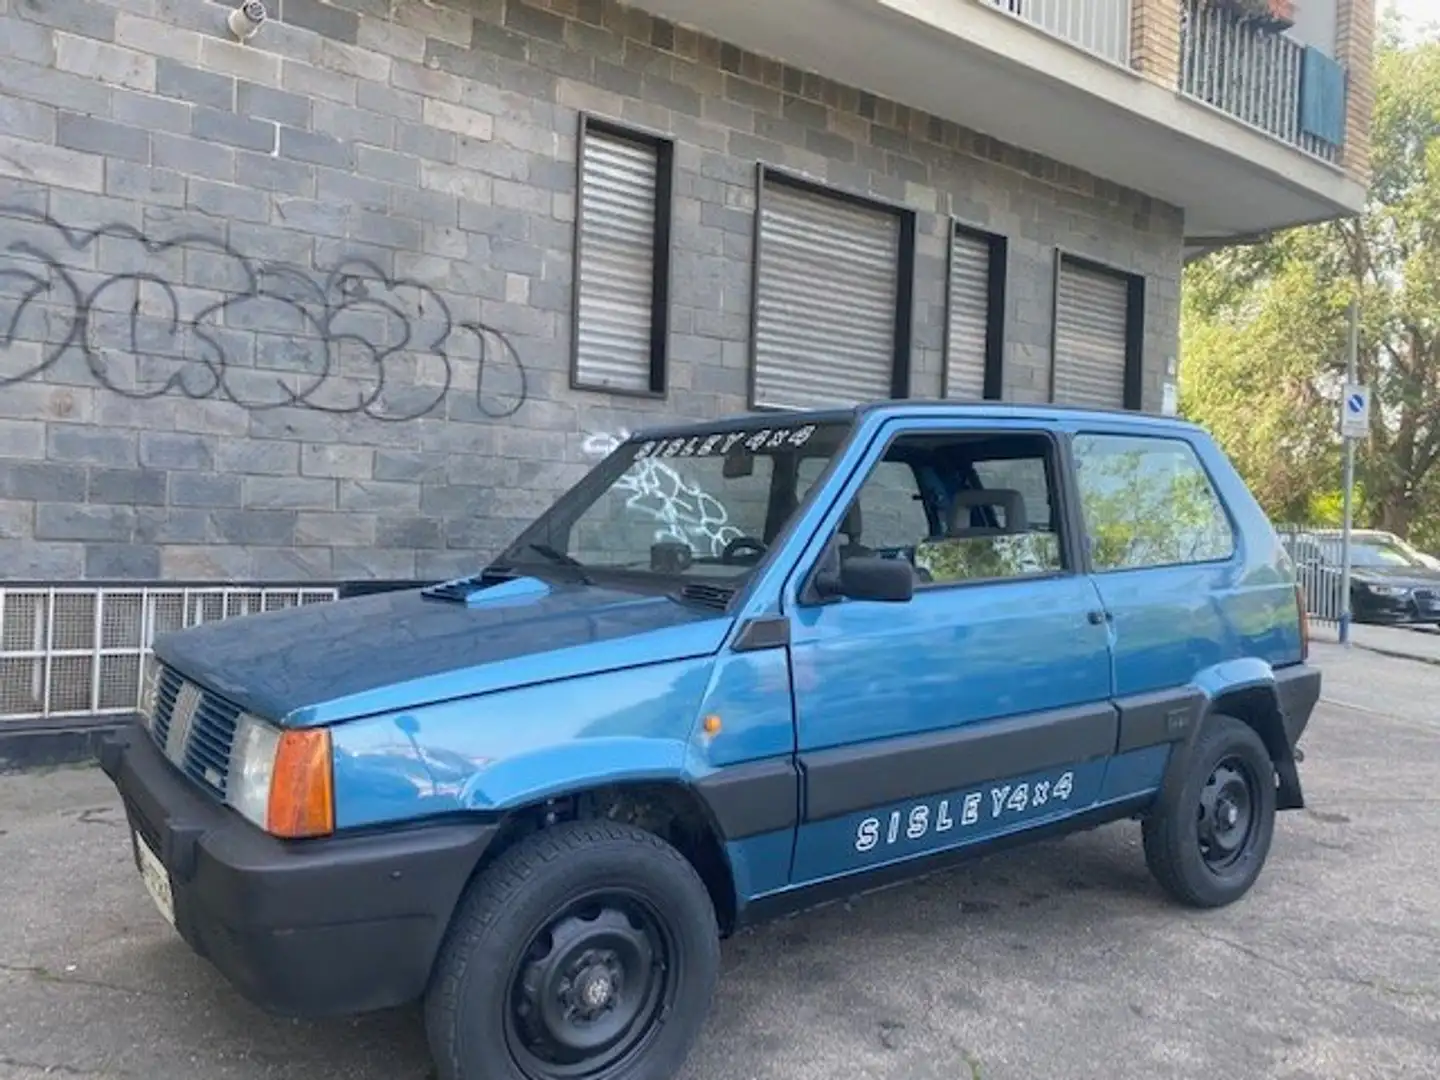 Fiat Panda fiat panda SISLEY 4X4 1989 - 1